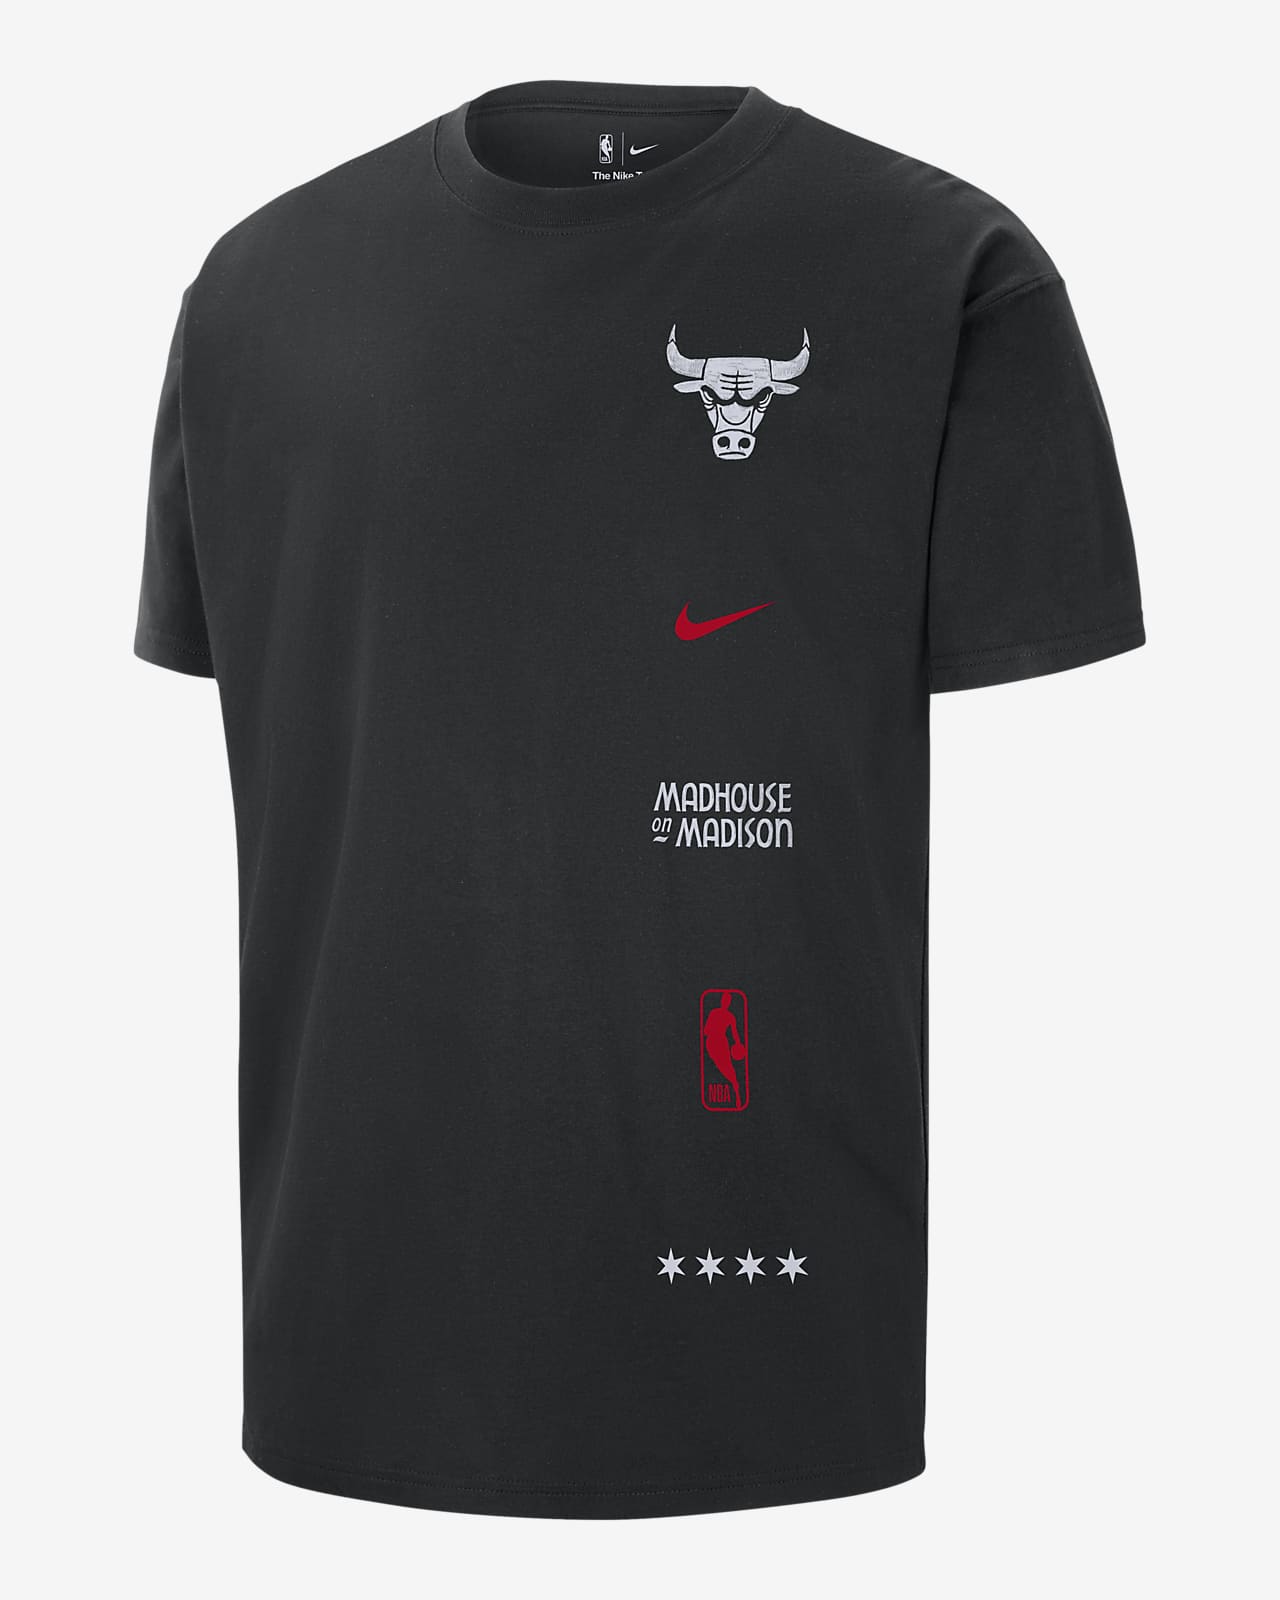 Camisetas y equipo Chicago Bulls. Nike MX